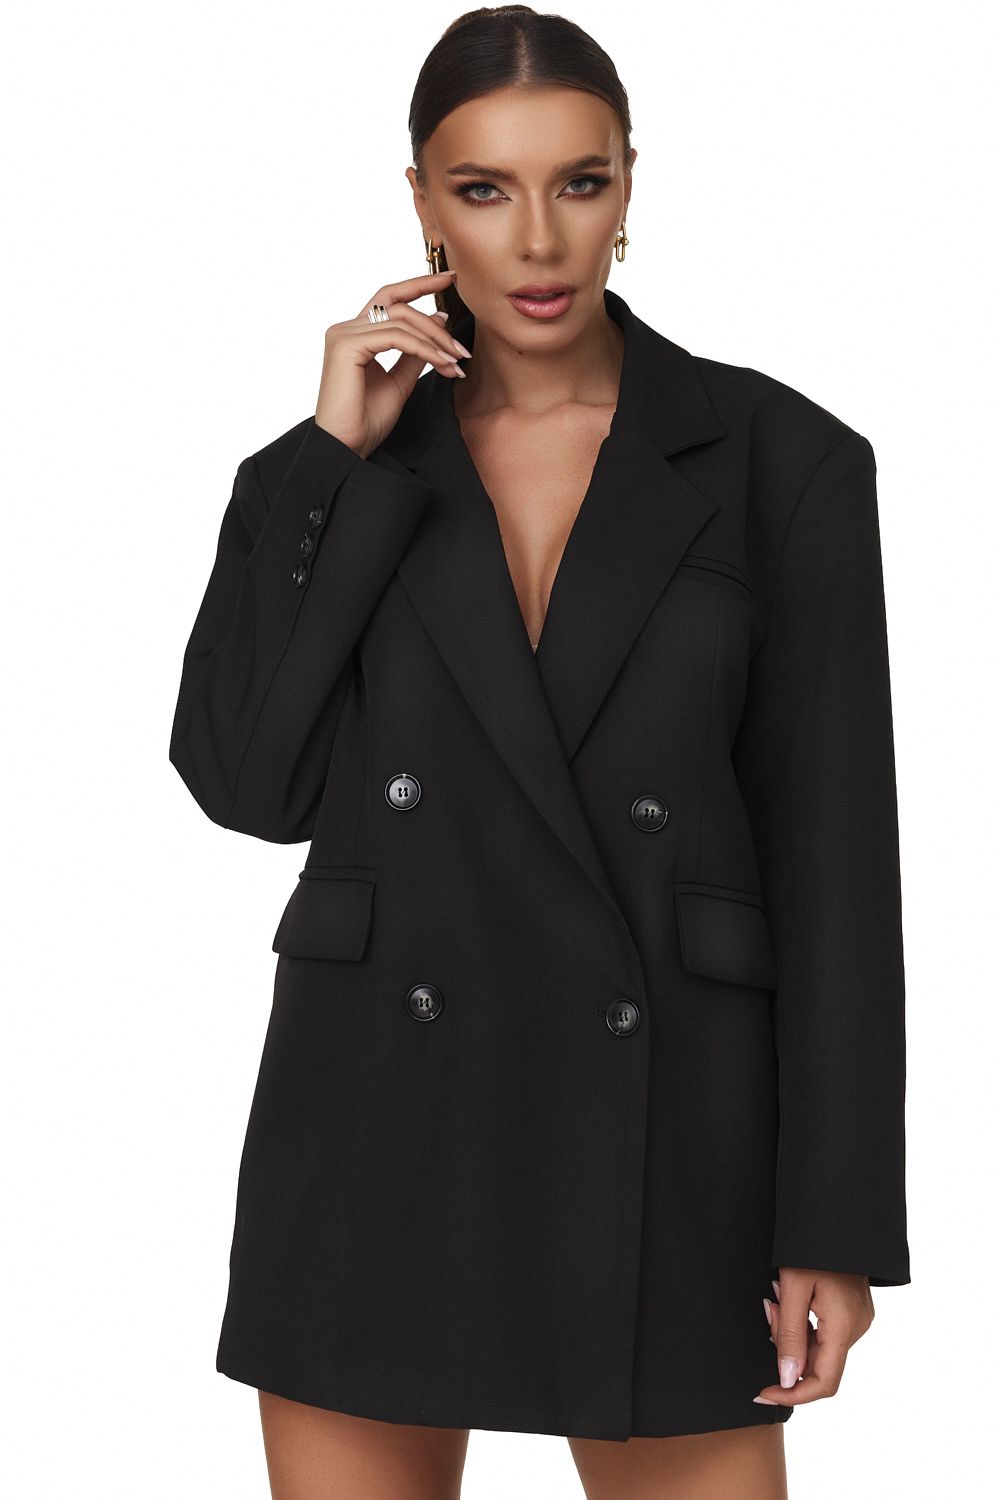 Revely Bogas elegáns fekete női kabát